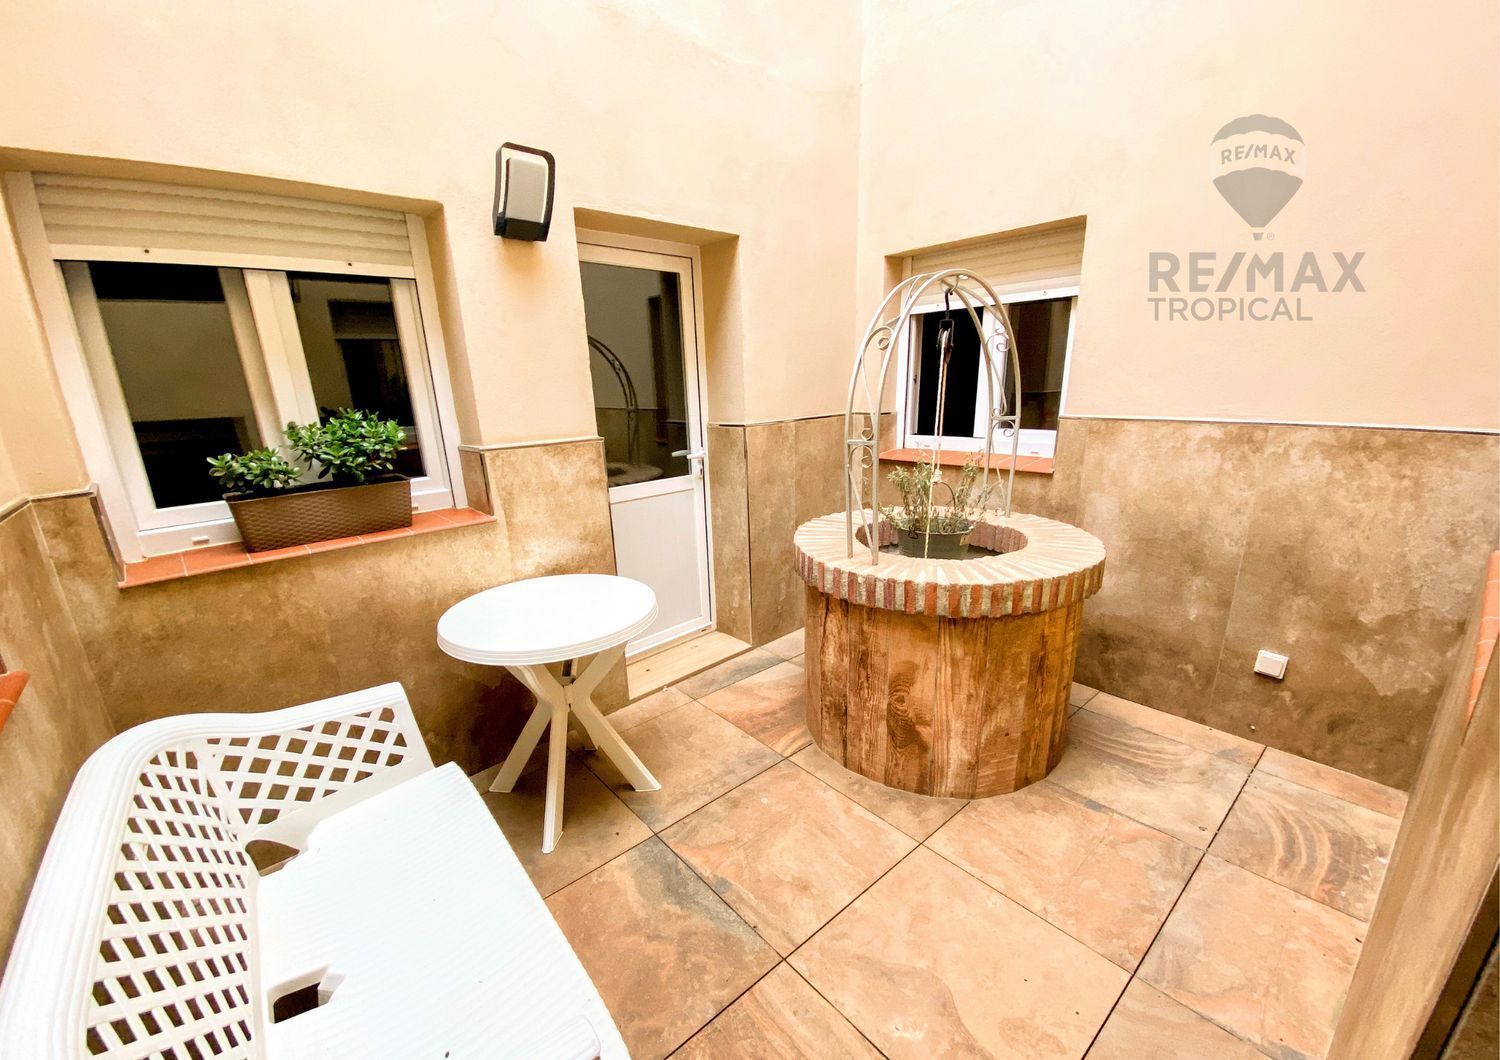 Área de Algarrobo, Málaga, 4 Bedrooms Bedrooms, 4 Rooms Rooms,4 BathroomsBathrooms,House,For Sale